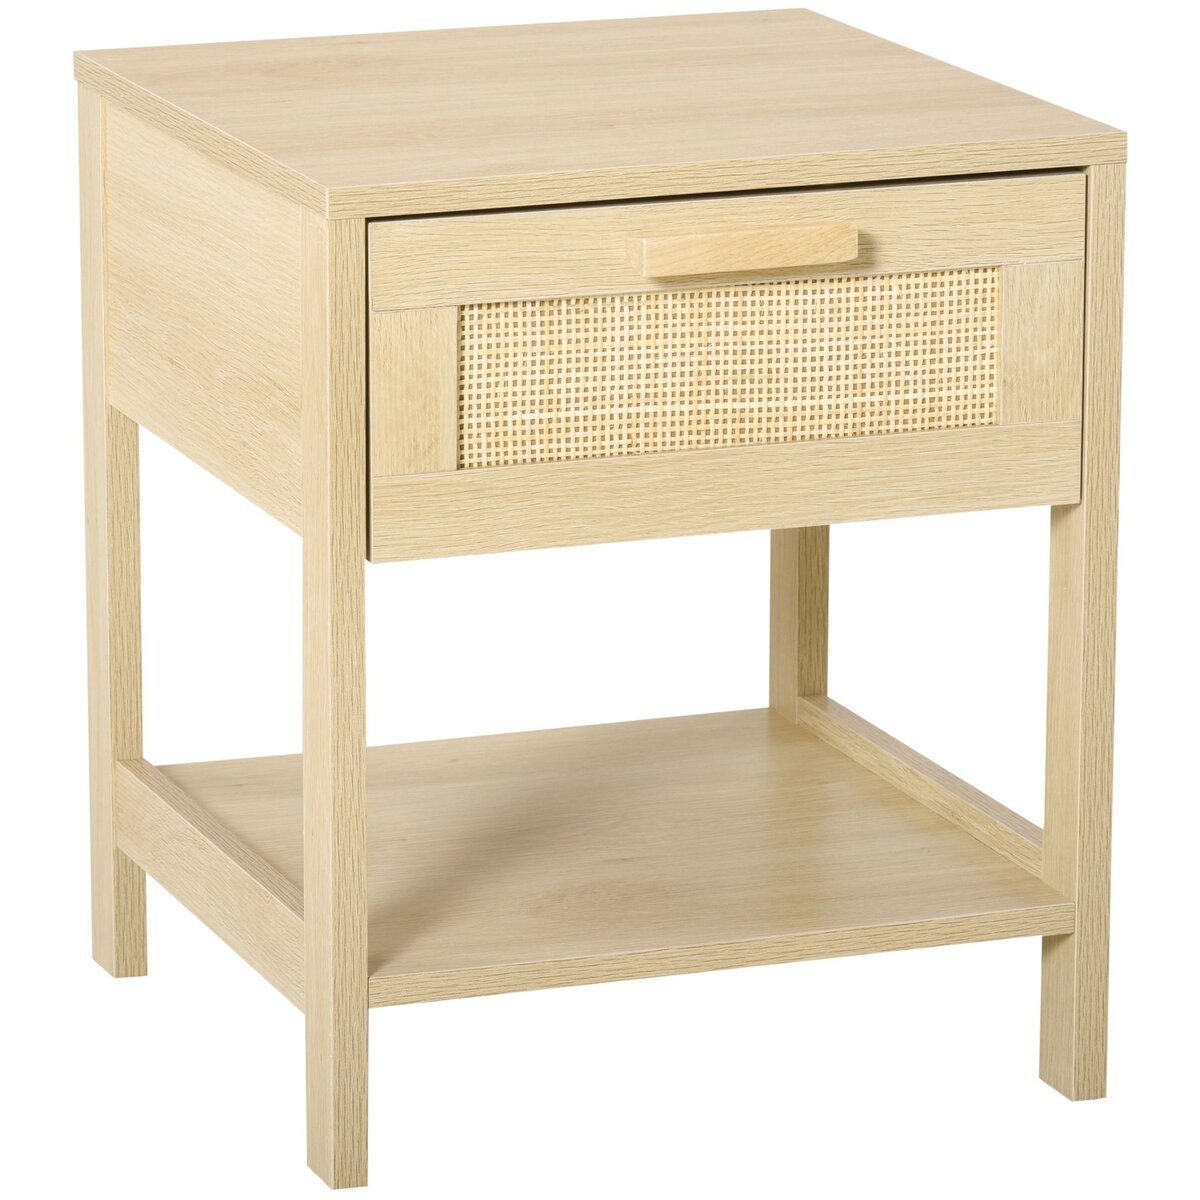 HOMCOM Table de chevet tiroir et étagère cannage en rotin dim. 40L x 40l x 48H cm MDF aspect bois clair